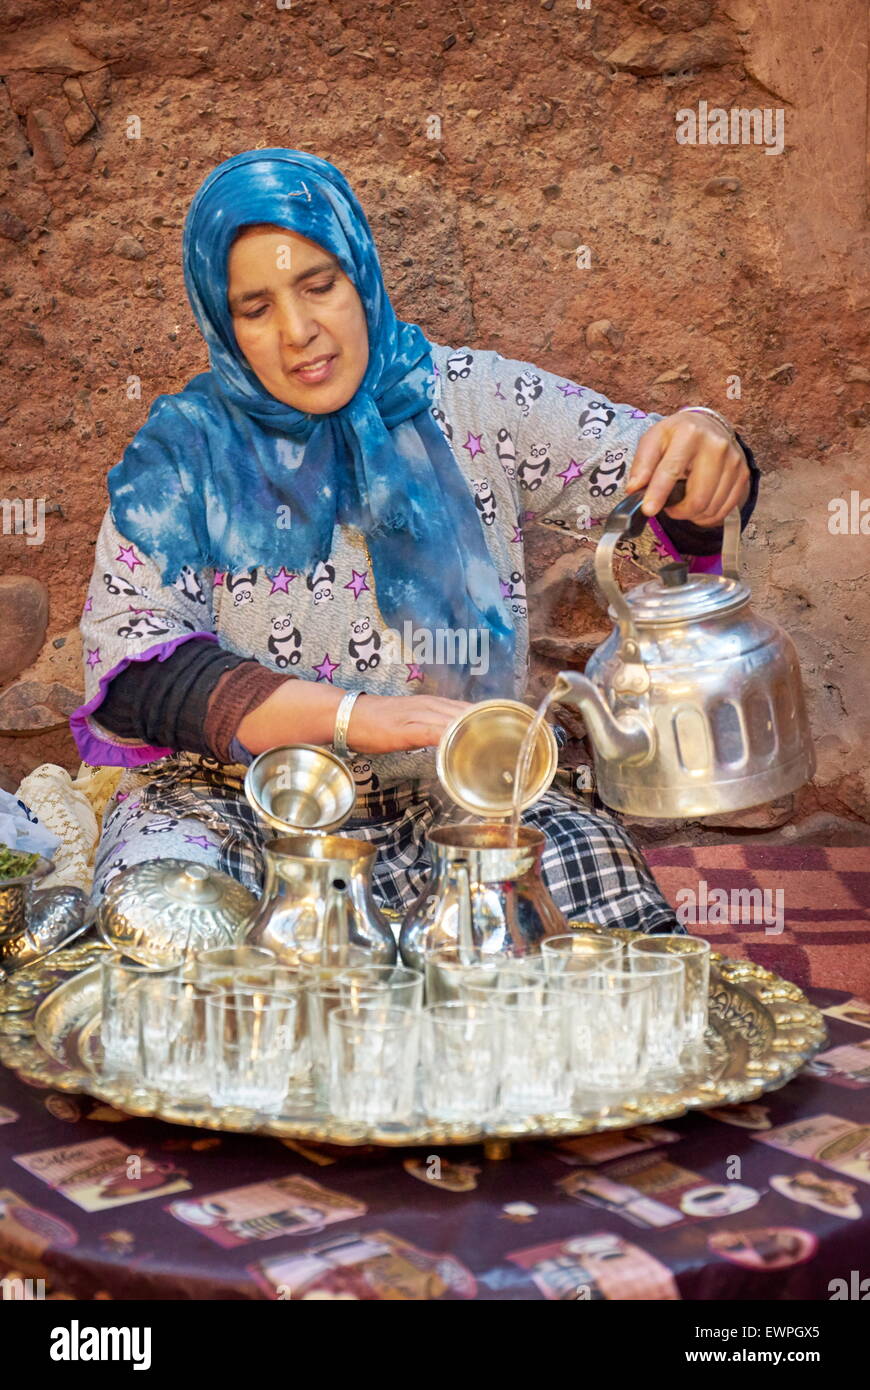 Cérémonie du thé. Les femmes berbères la préparation du thé à la menthe et verveine. Vallée de l'Ourica, Maroc Banque D'Images